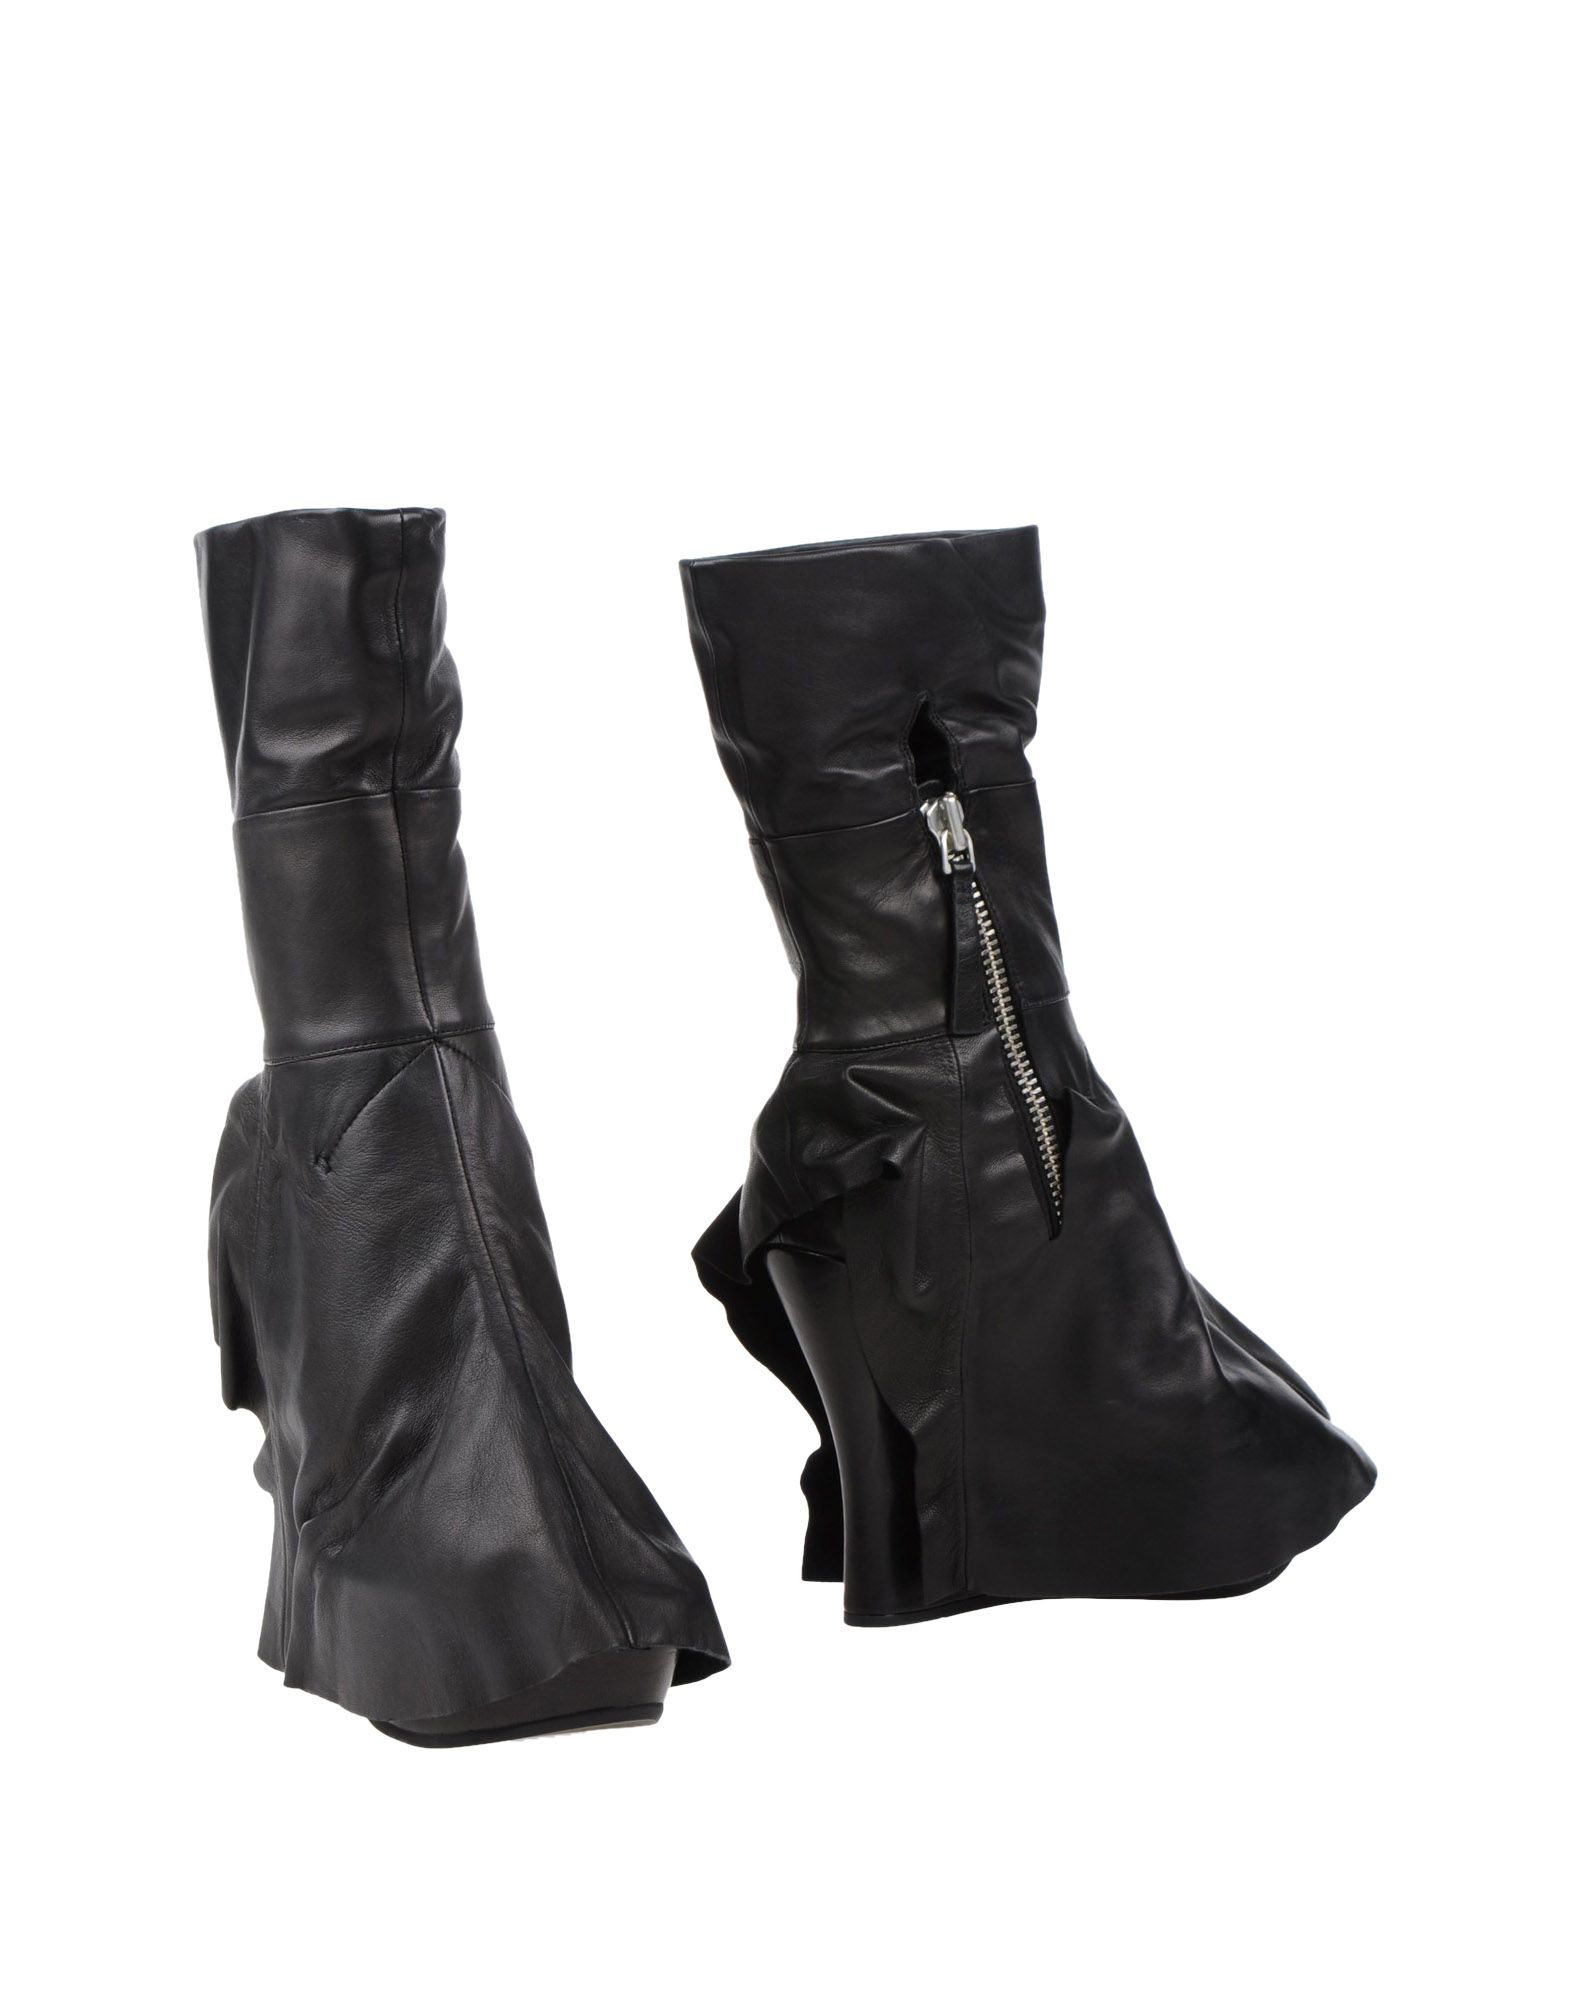 Camilla Skovgaard Ankle Boots in Black | Lyst